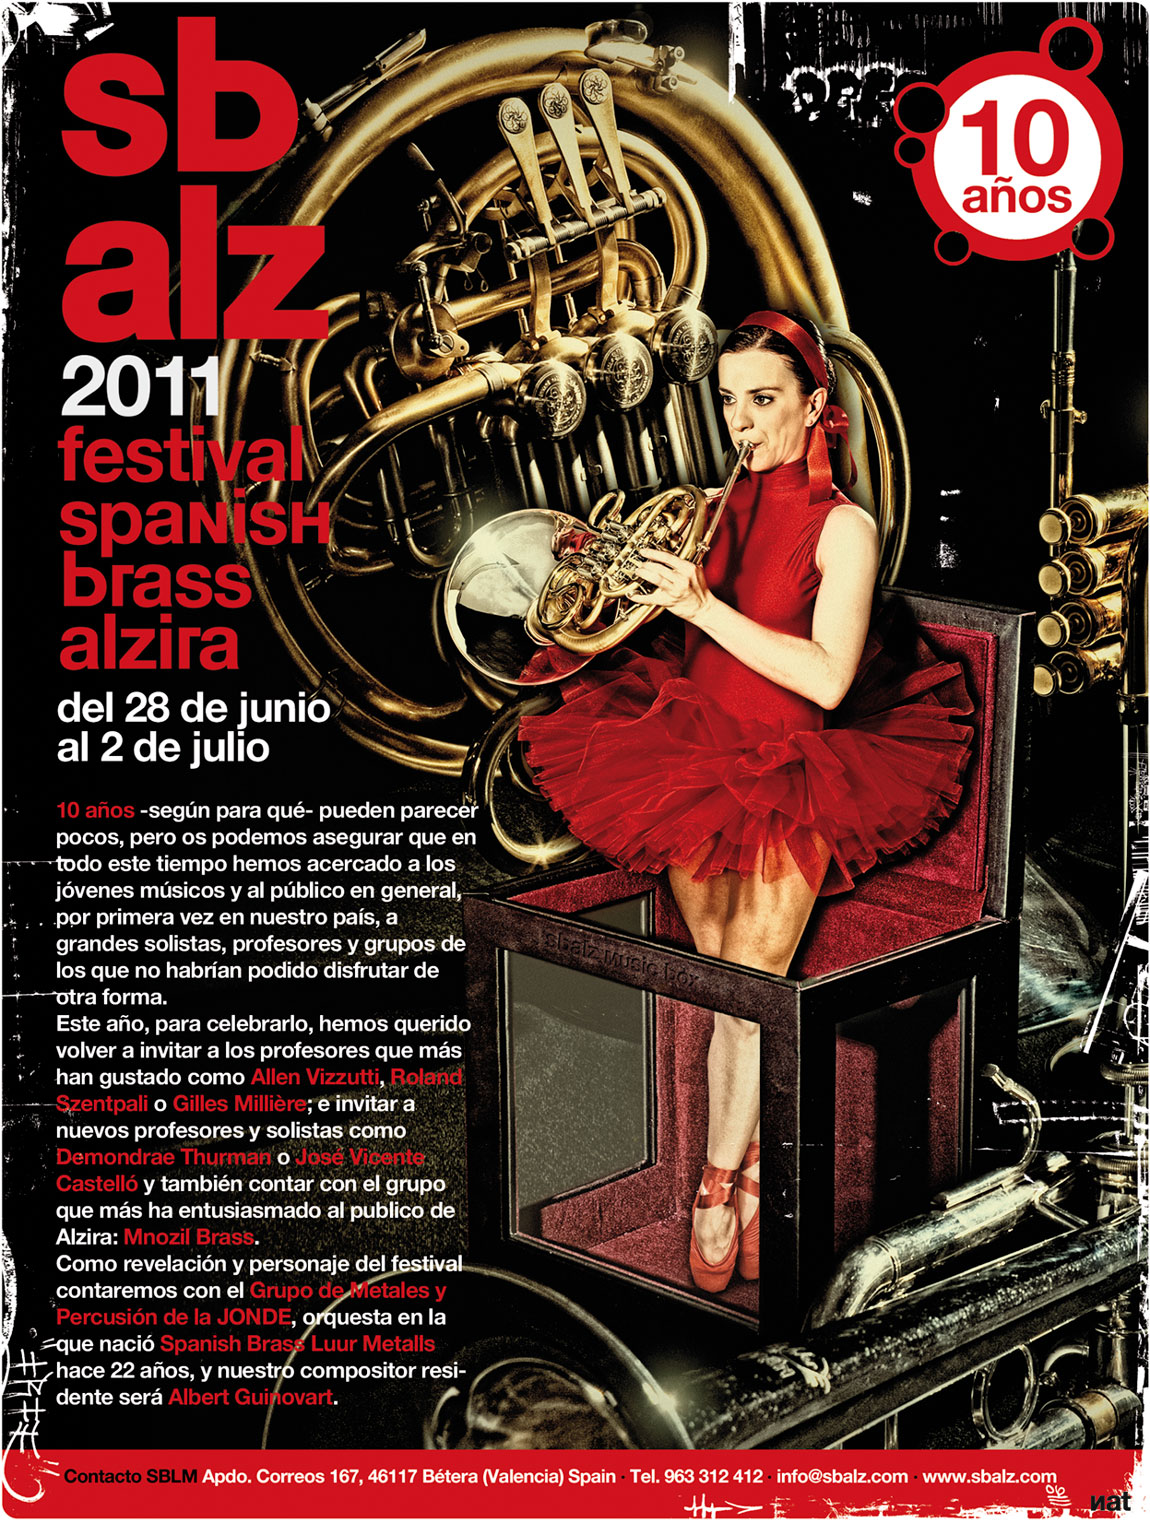 Cartel principal para el festival Sbalz 2011.